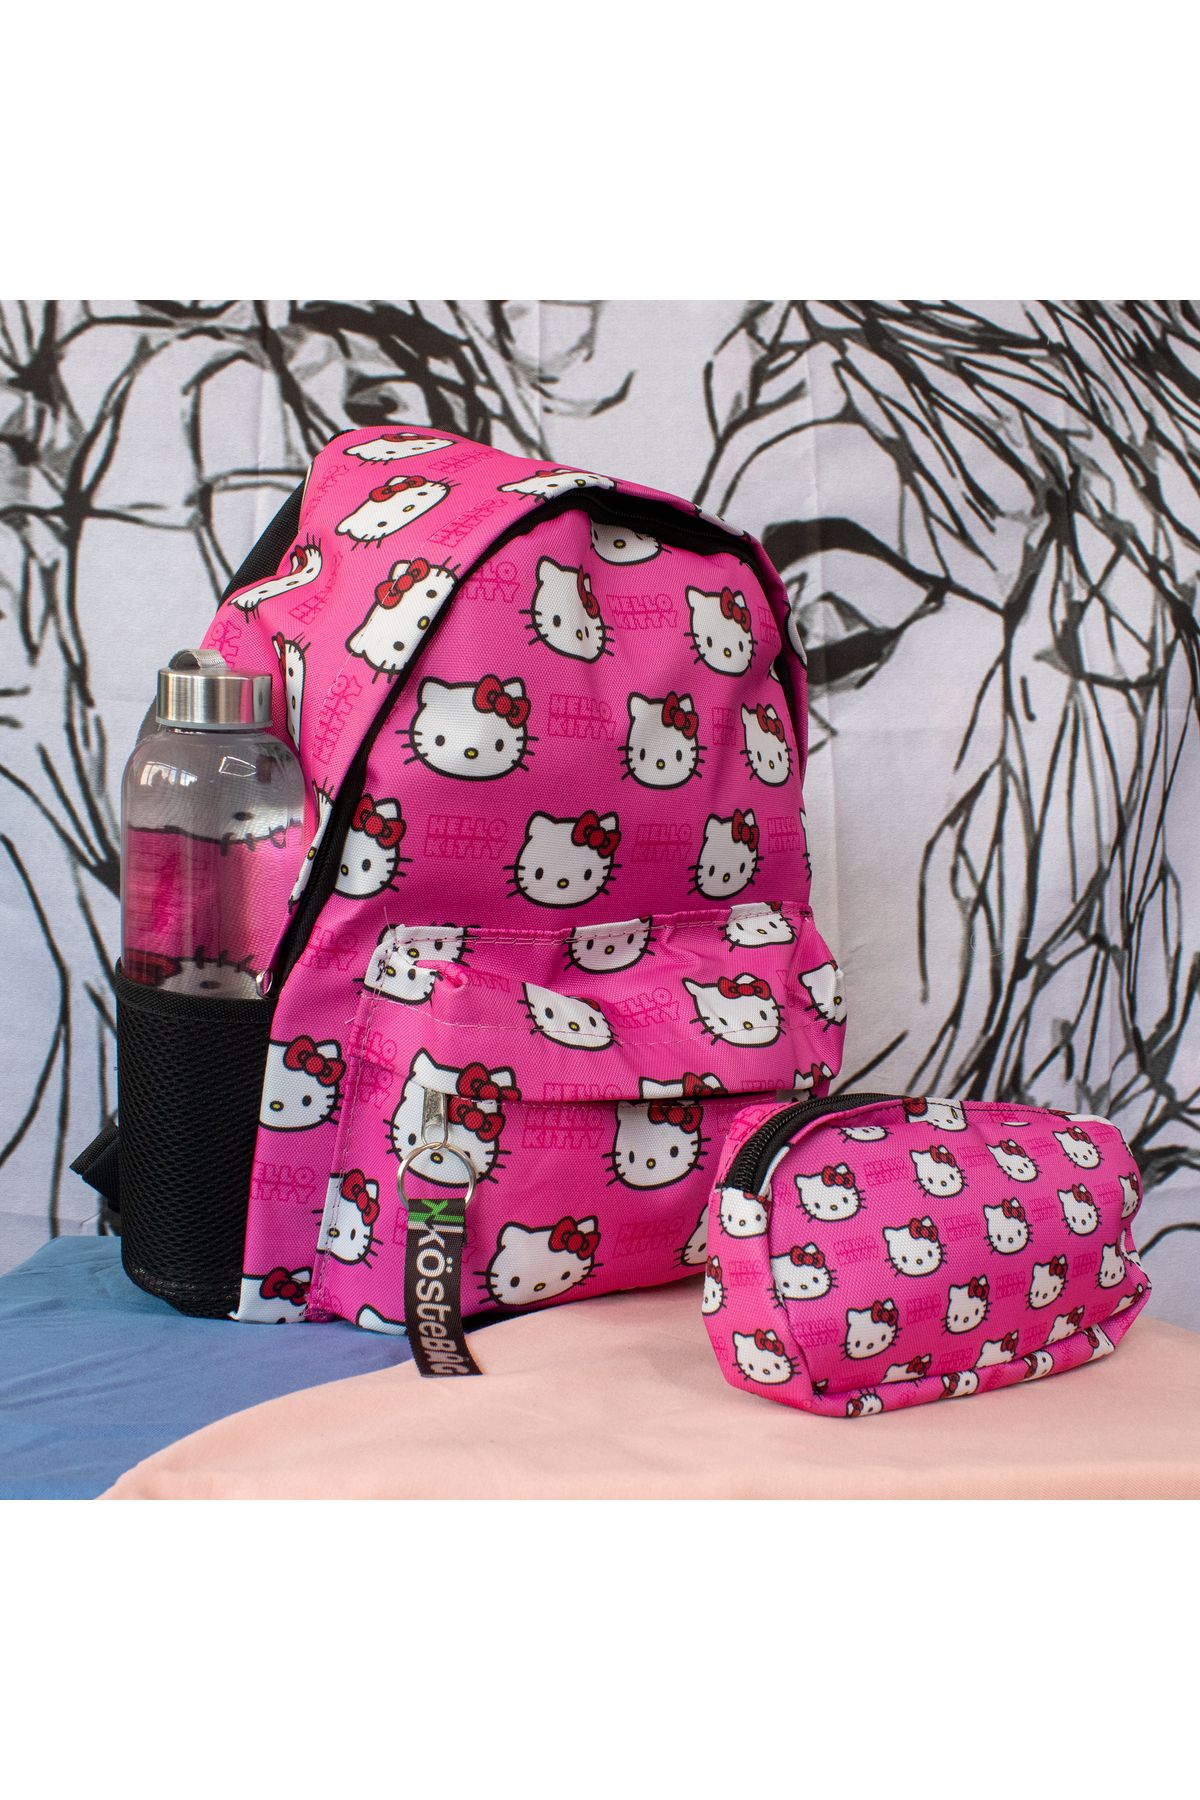 Köstebek Suluk Bölmeli Pembe Hello Kitty Basic Kolaj Kalemlikli Okul Sırt Çantası